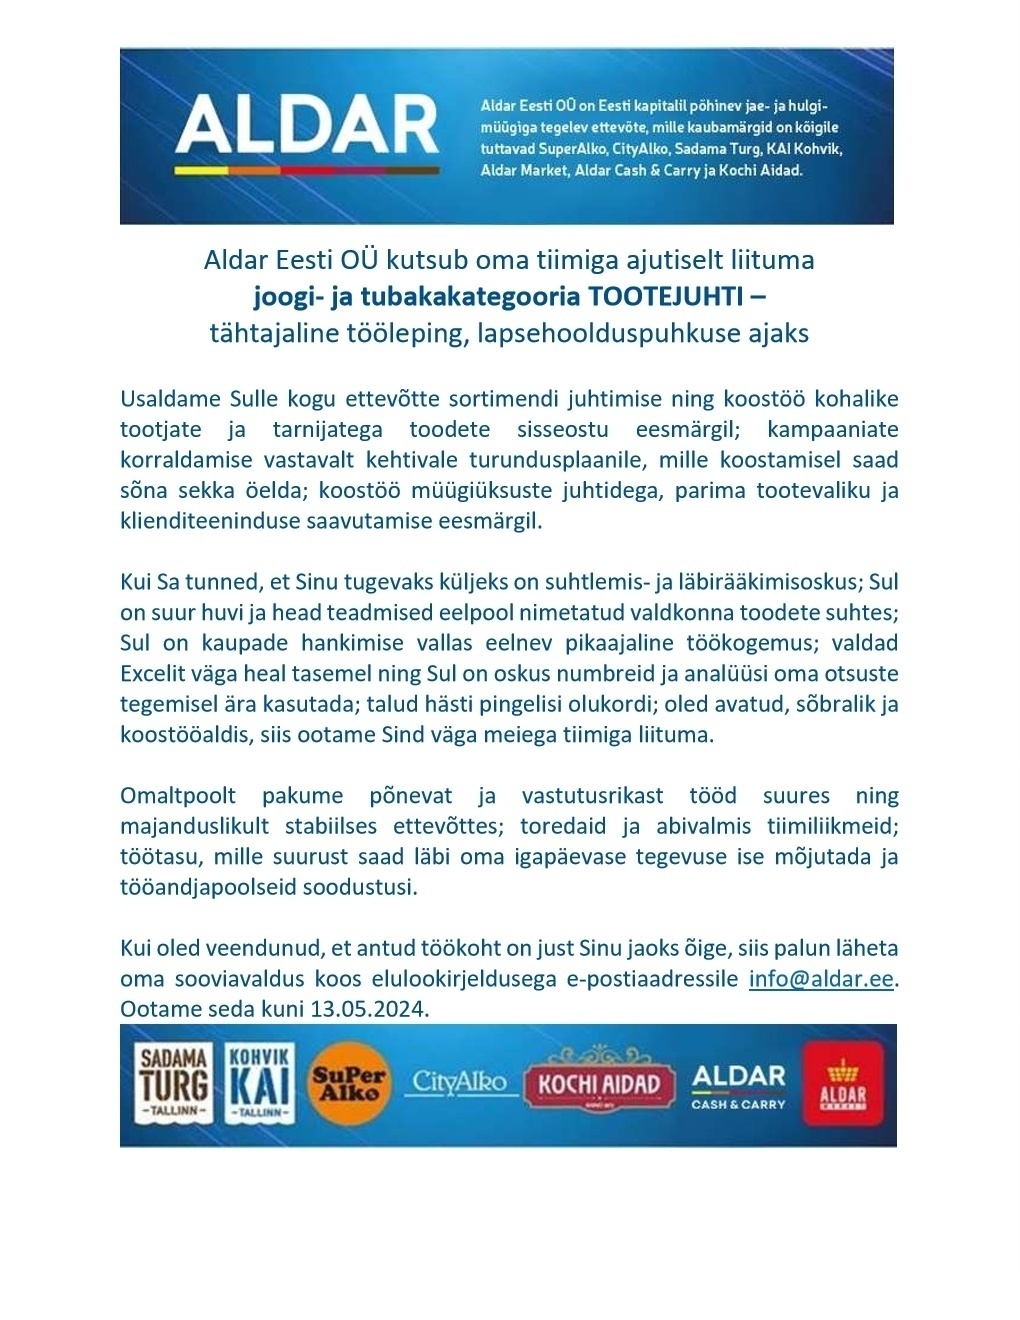 Aldar Eesti OÜ Joogi-ja tubakakategooria Tootejuhti - tähtajaline tööleping, lapsehoolduspuhkuse ajaks